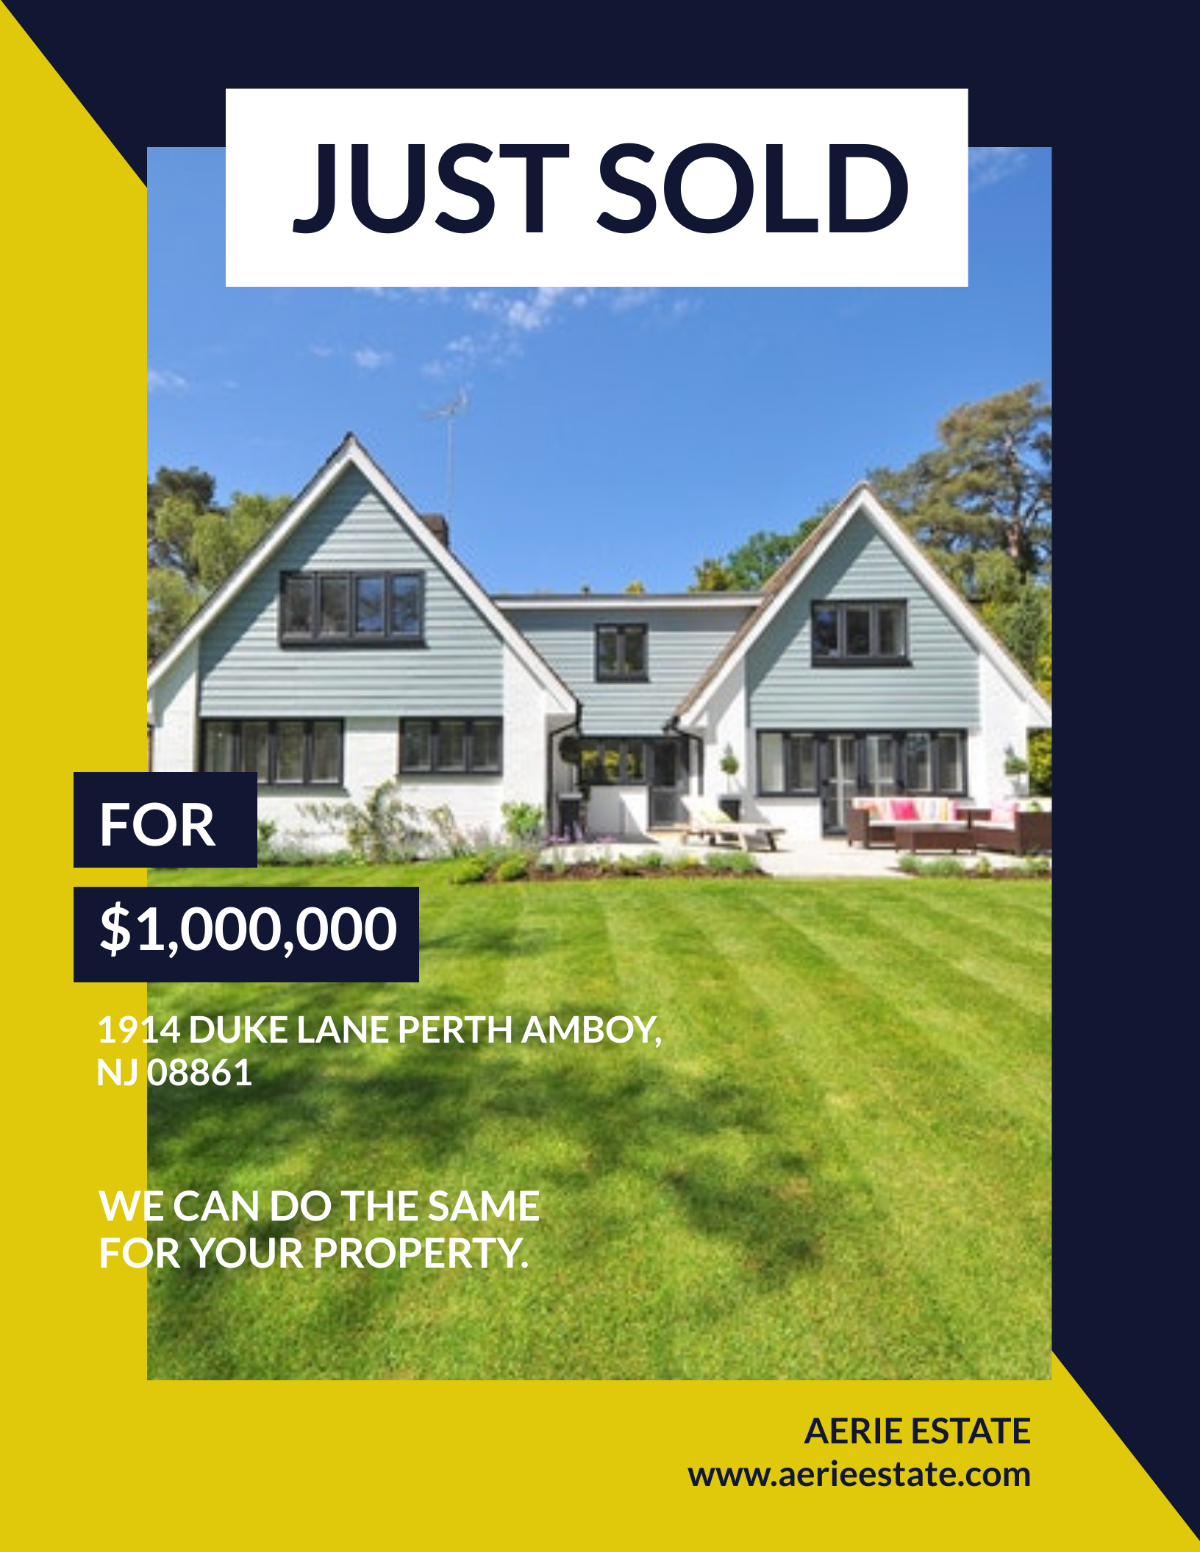 Just Sold Real Estate Flyer